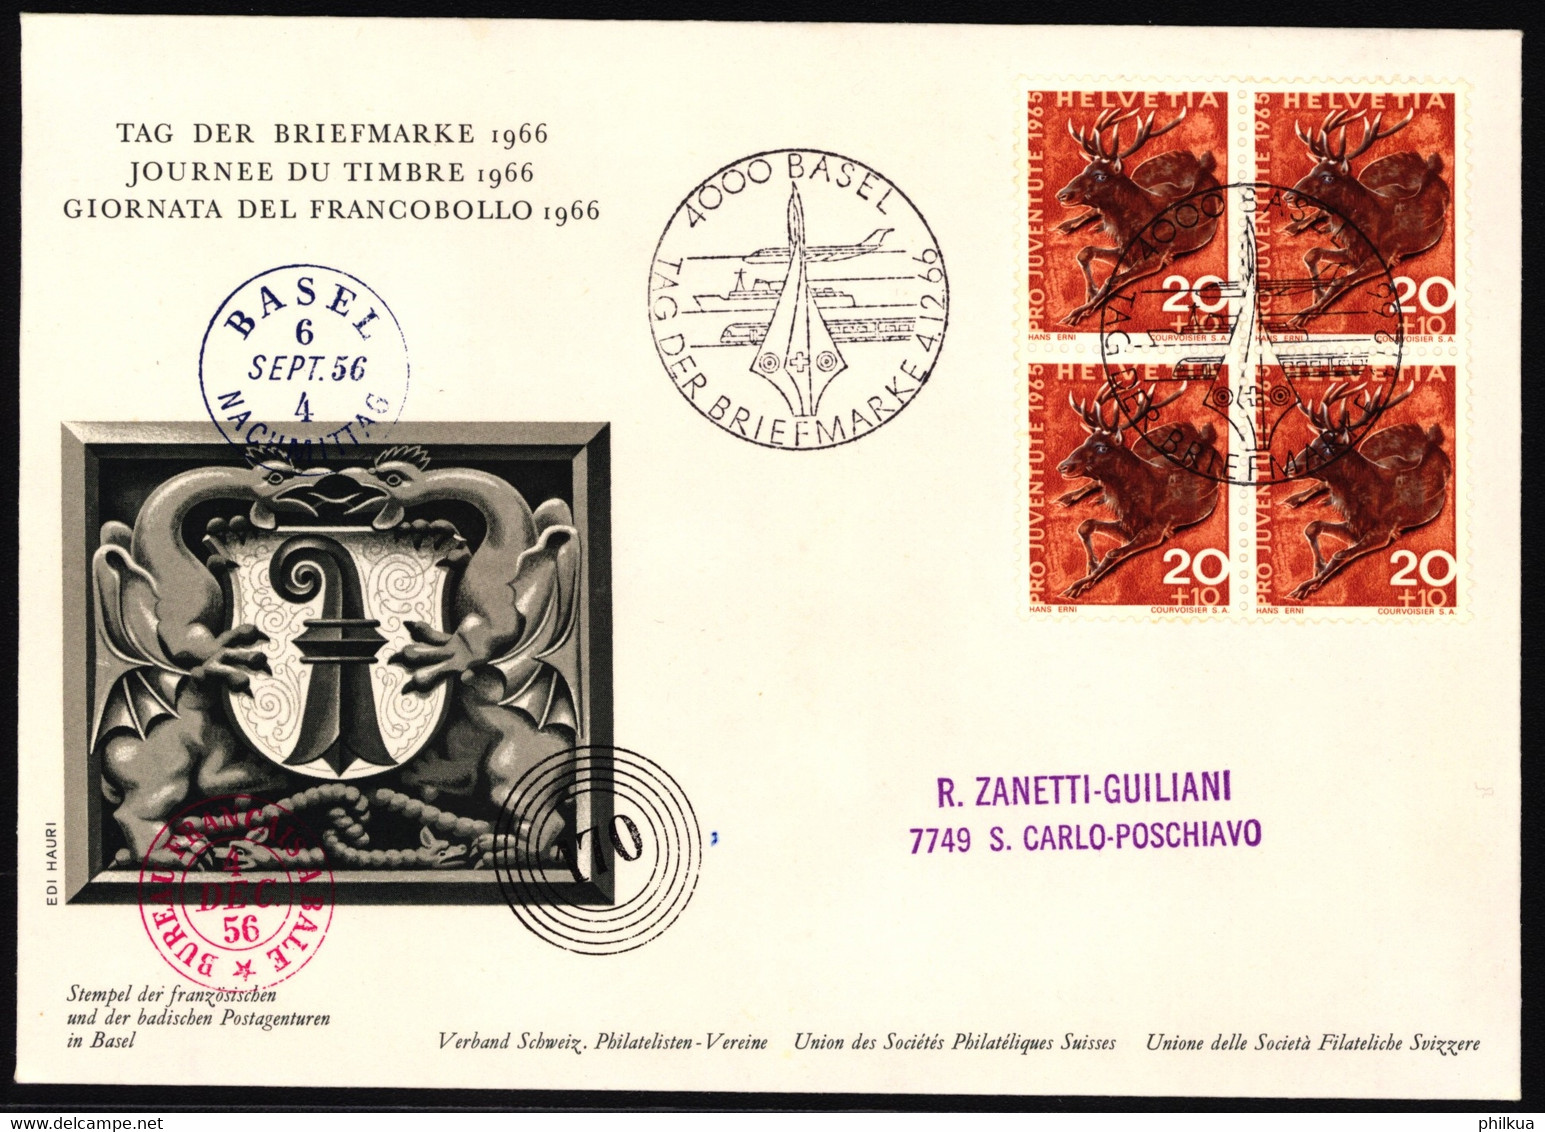 J212 Edelhirsch Auf Ofiziellem Sonderumschalg "Tag Der Briefmarke" Mit Stempel Tag Der Briefmarke 1966 - BASEL - Giornata Del Francobollo